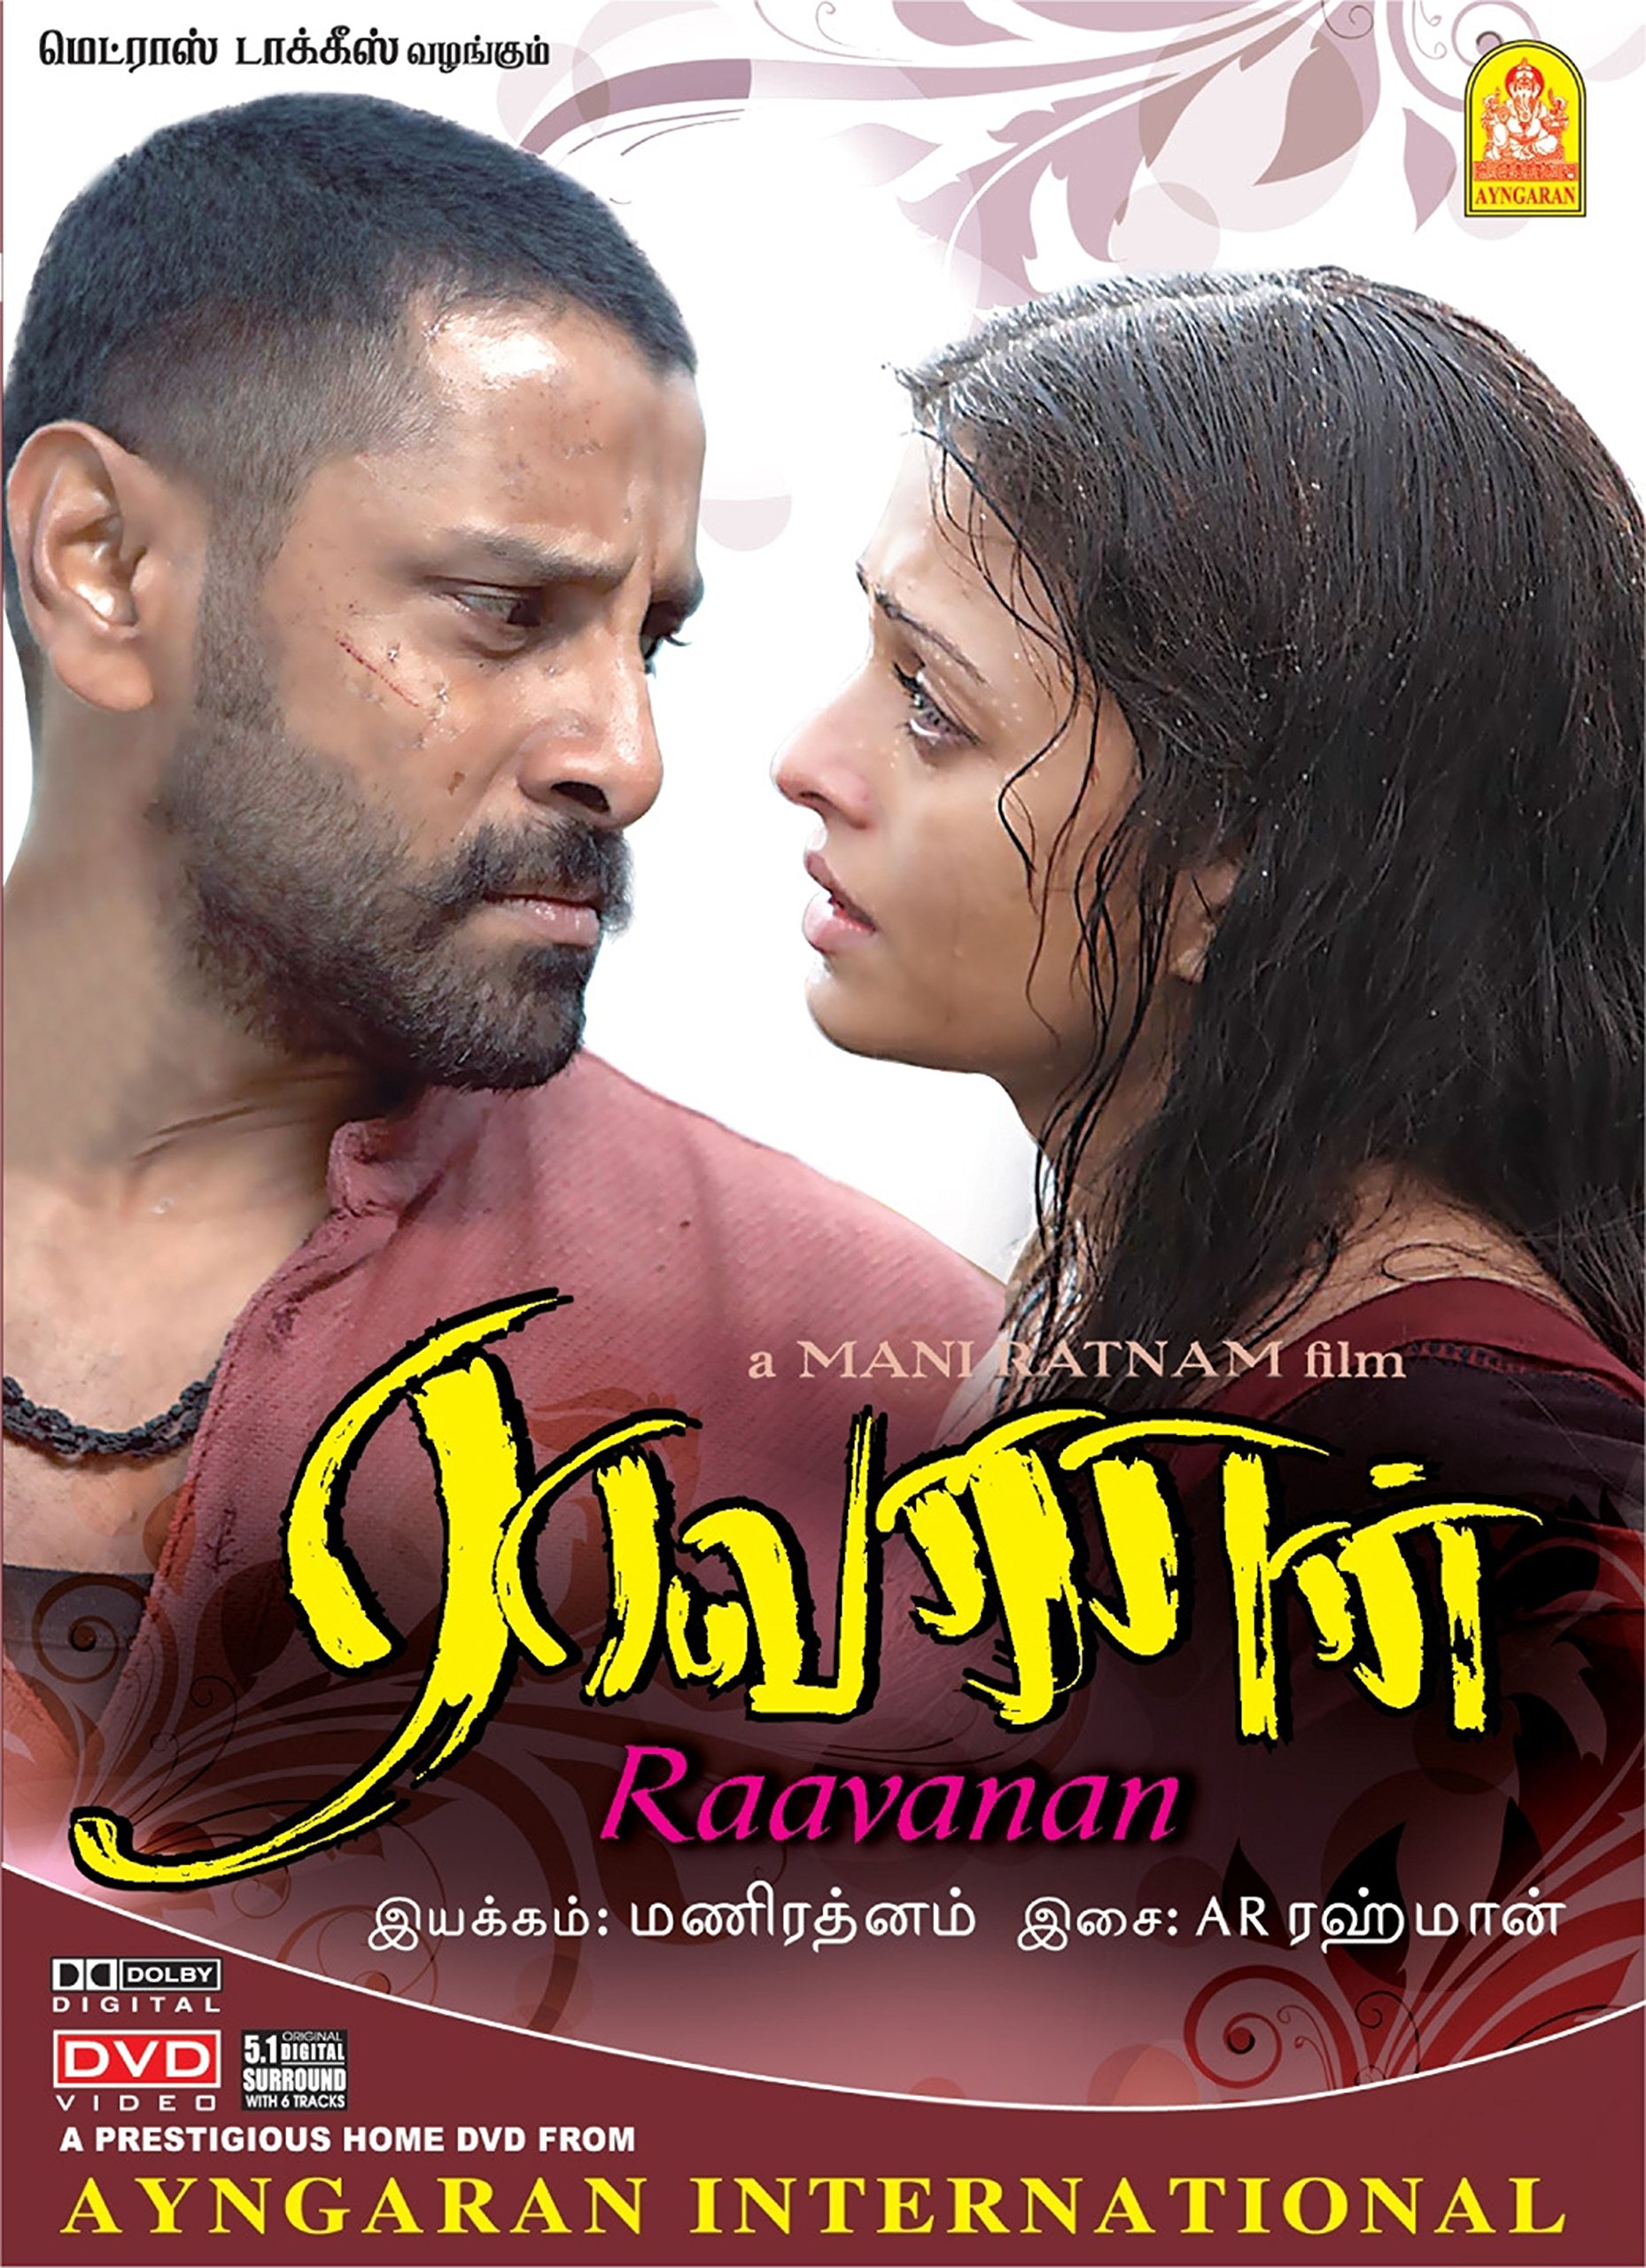 Tamil Movie Dvd Online hausbesuche machen